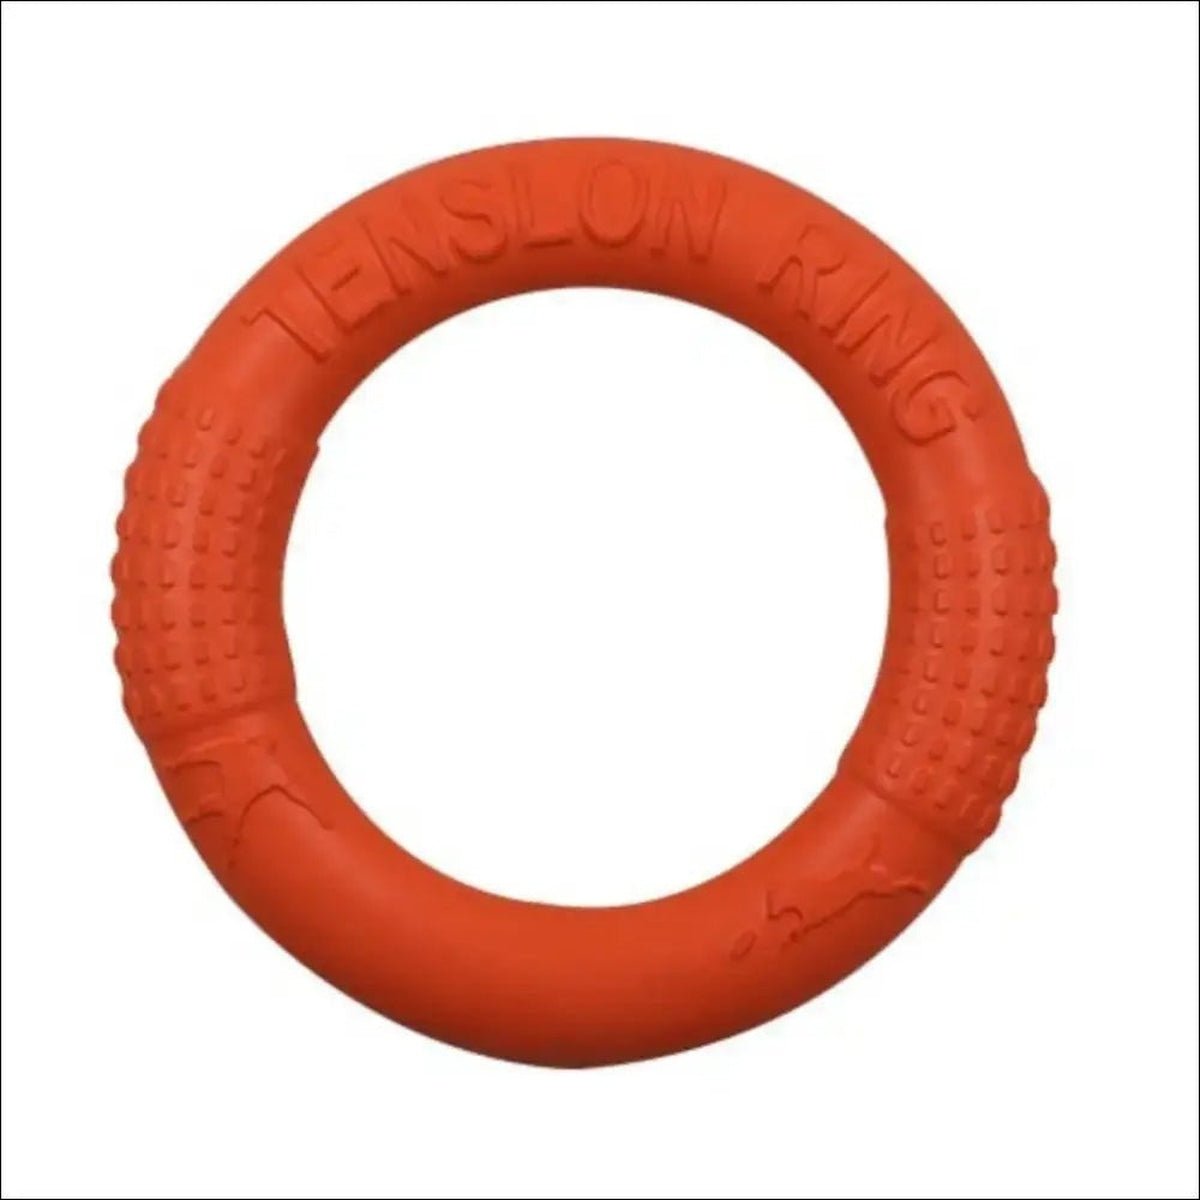 Jouet Indestructible Floatringer Pour Chien - CJJJCWGY01977 - Orange - S - Frisbee - Chienalafolie